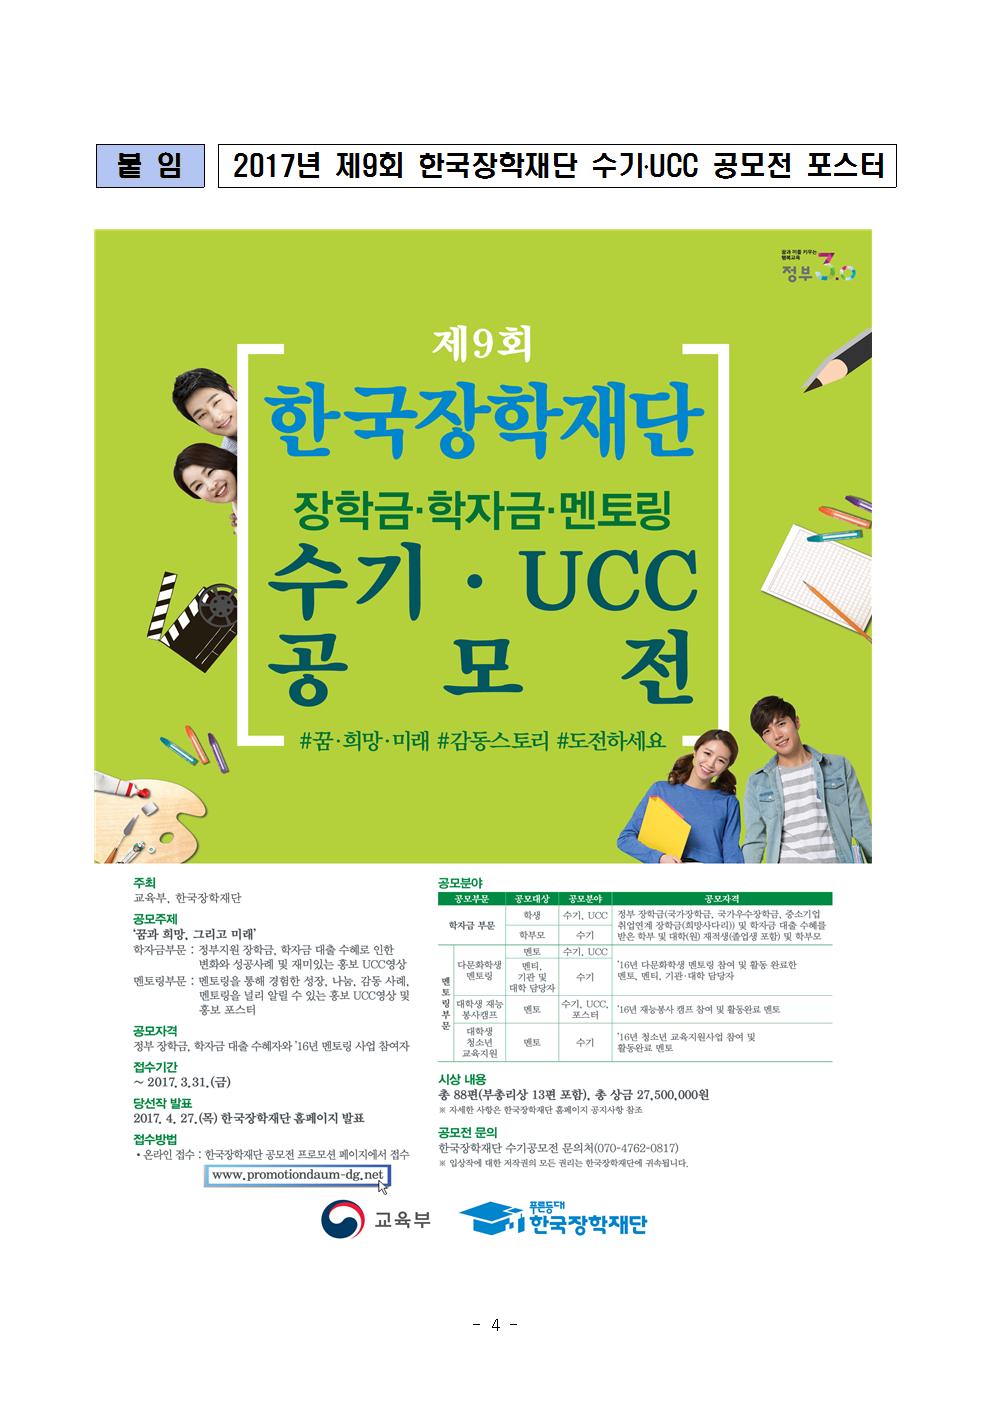 03-13(월)[보도자료] 제9회 한국장학재단 수기 UCC 공모전 개최(최종)004.jpg